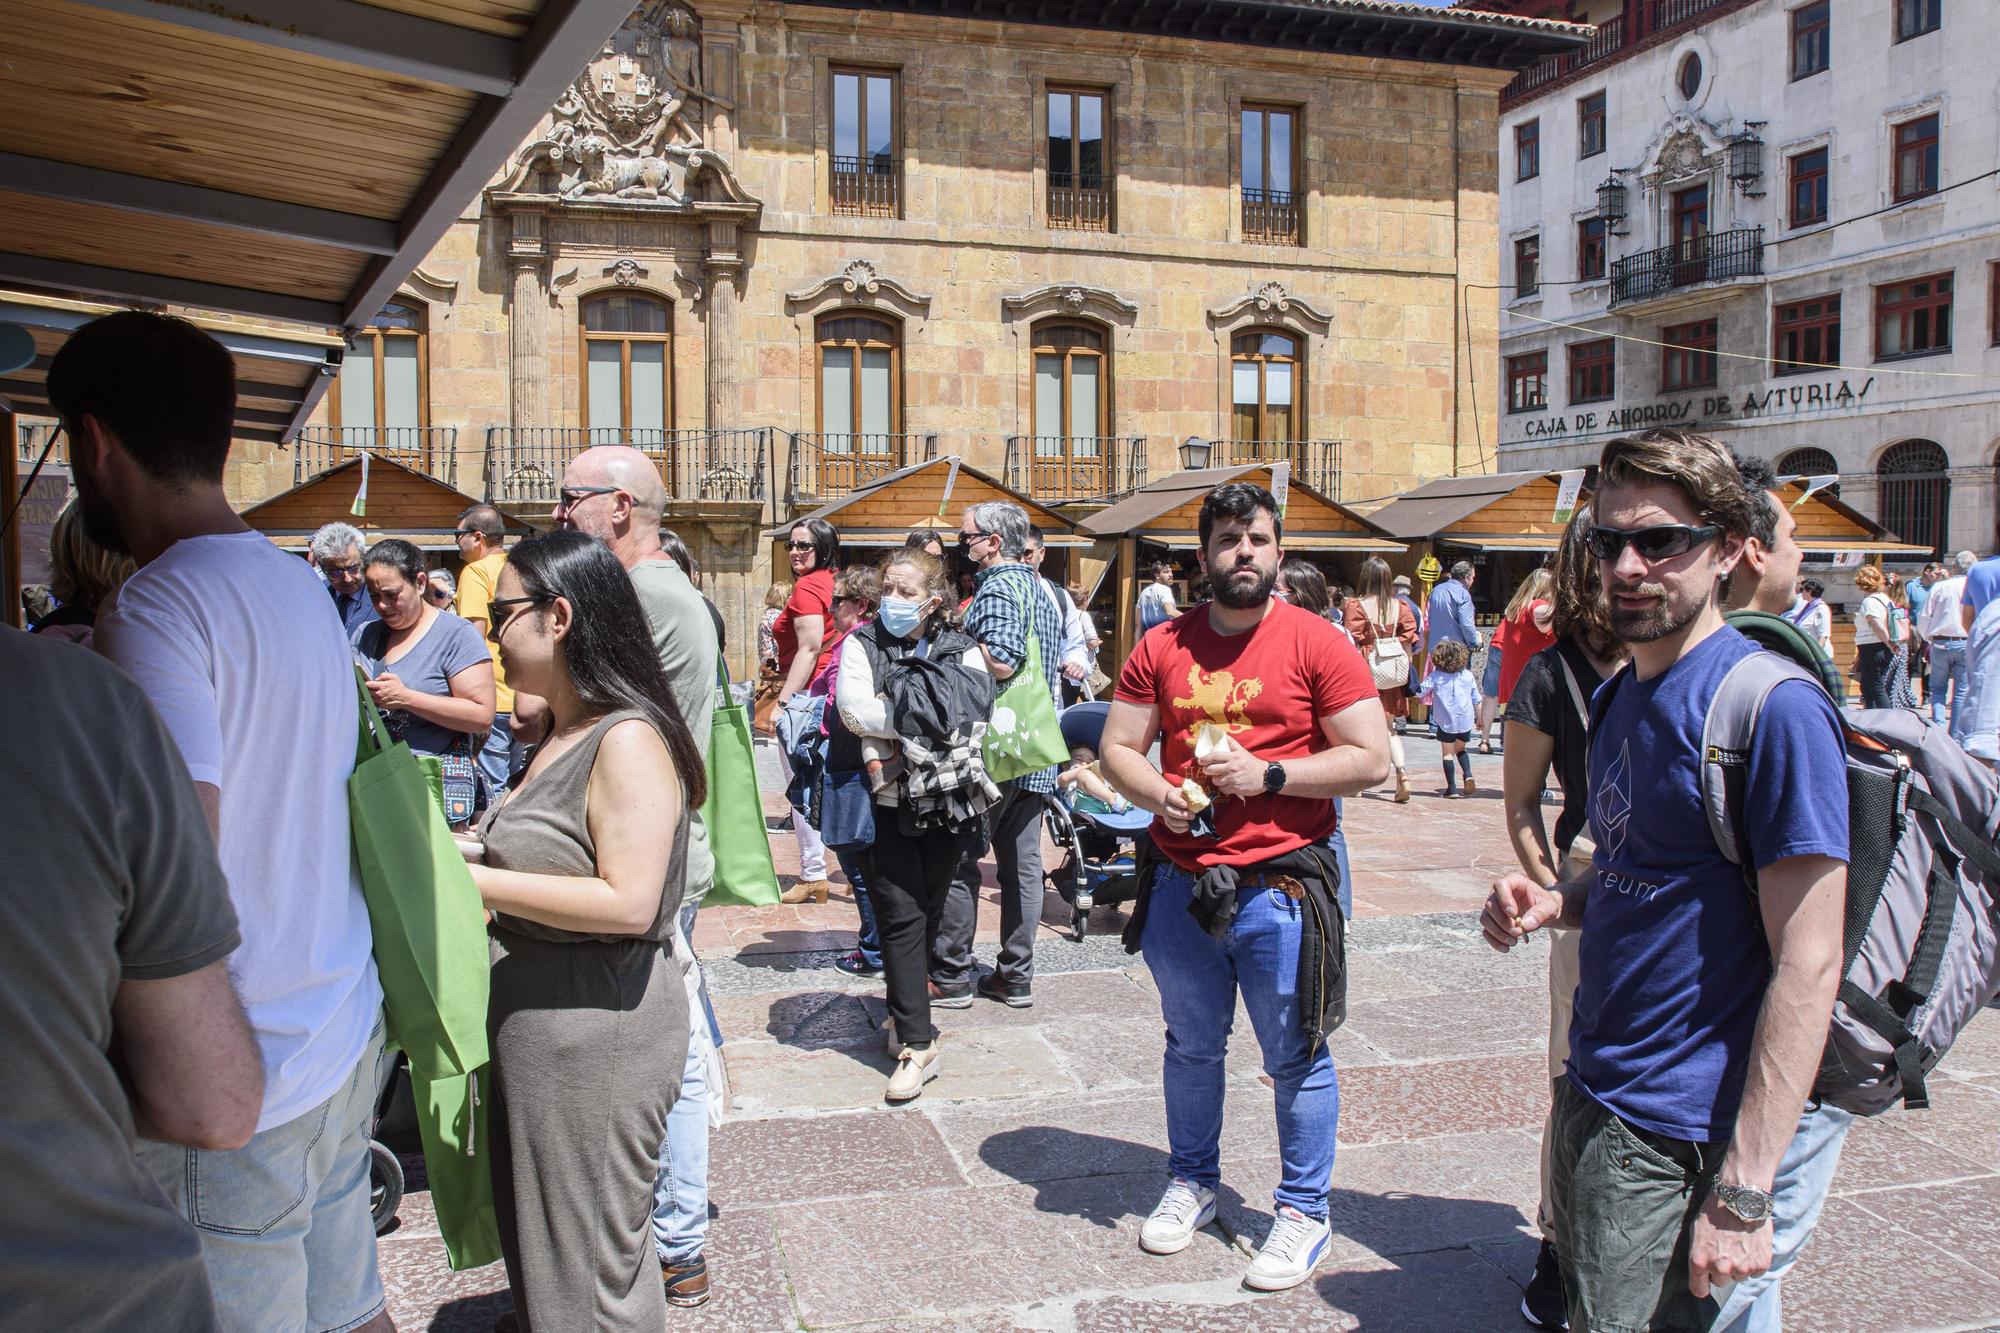 Galería de fotos: buen ambiente y sol en la celebración de la feria de la Ascensión en Oviedo